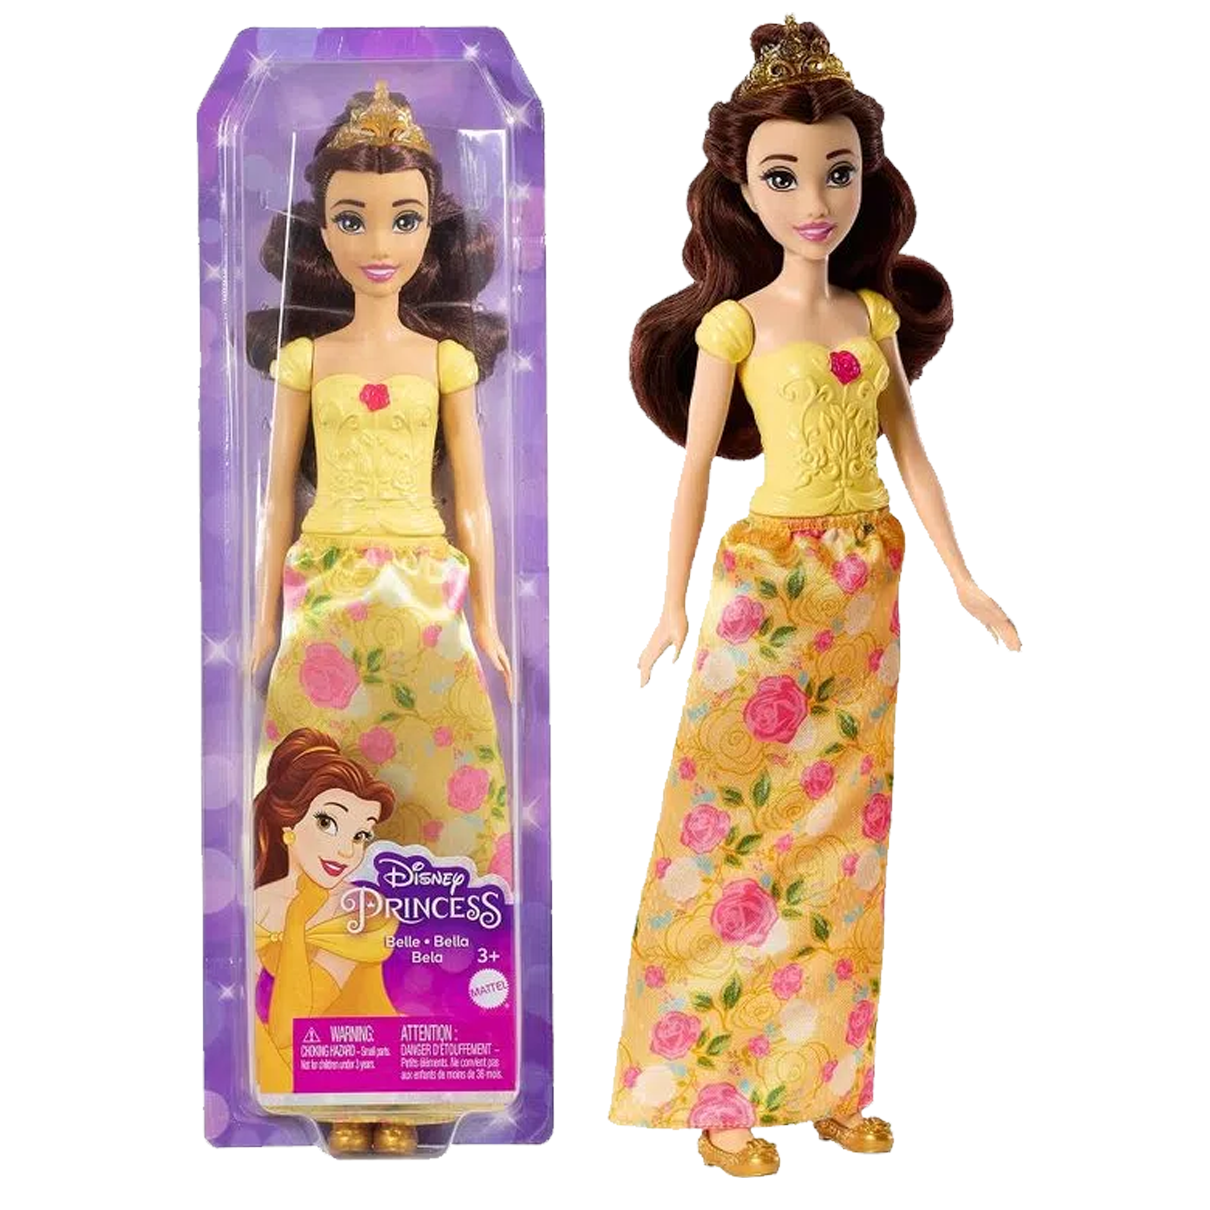 Comprar Boneca Disney Princess Frozen Elsa de Mattel